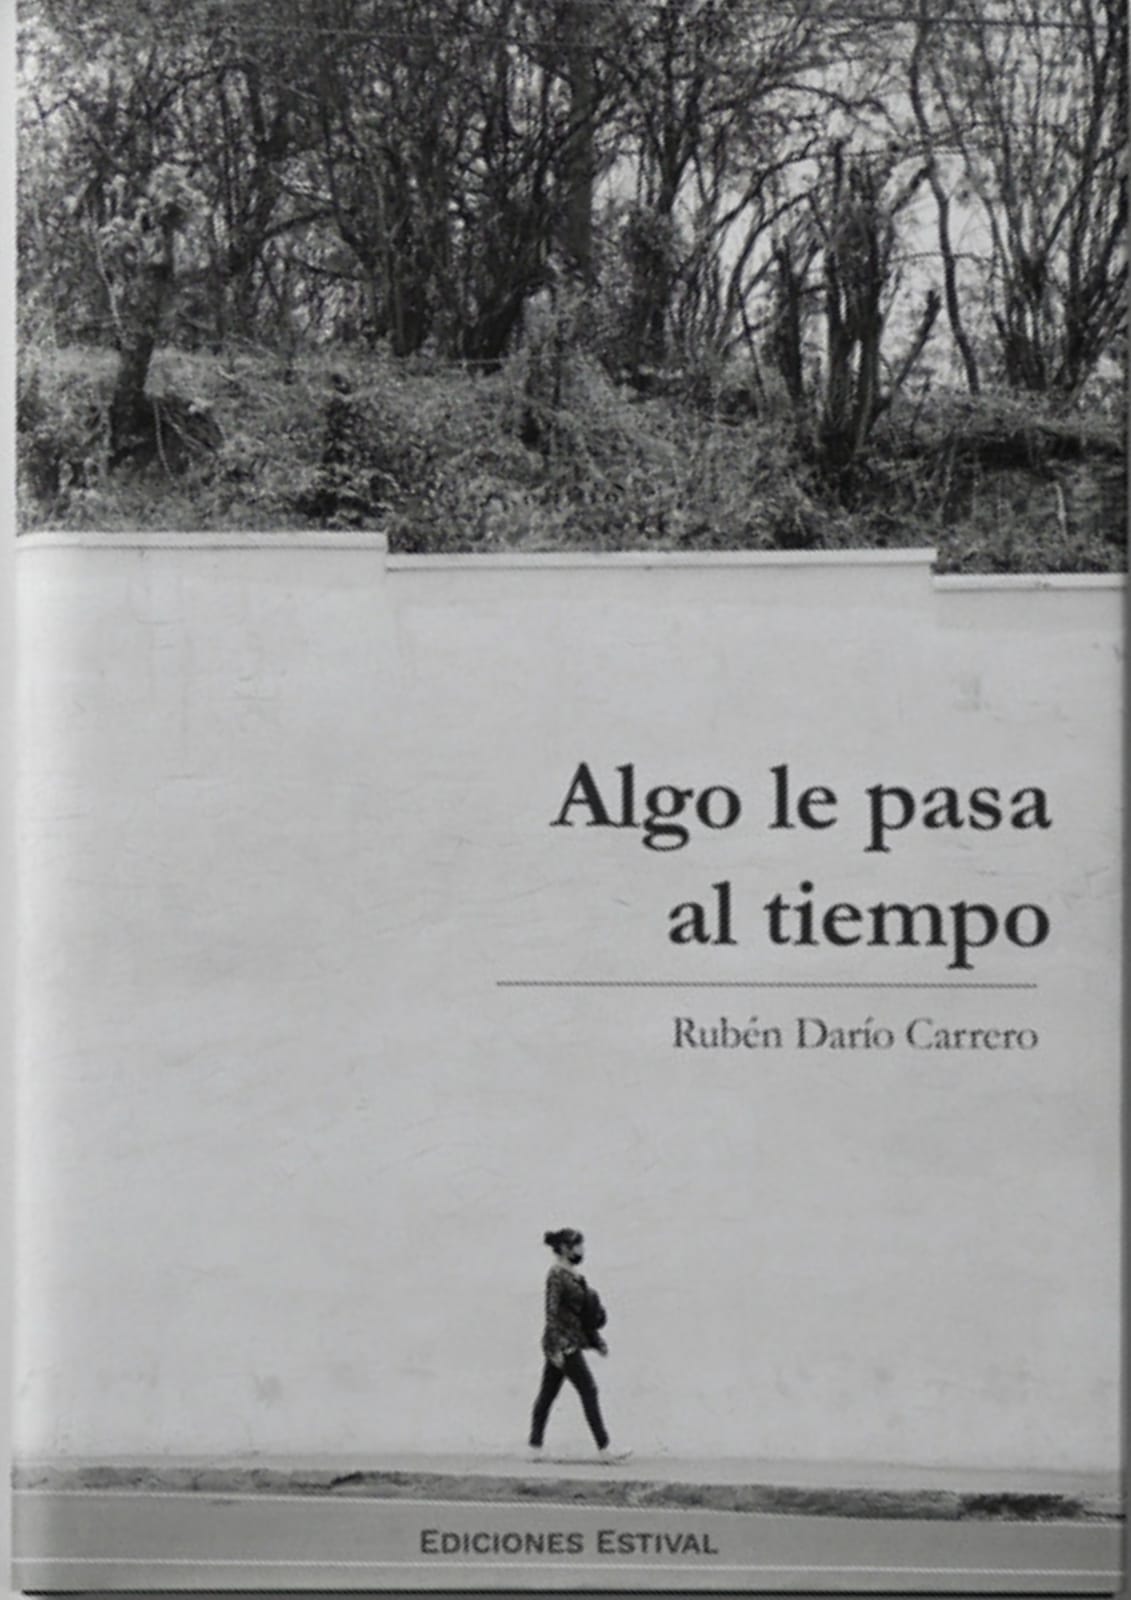 Algo le pasa al tiempo by Rubén Darío Carrero